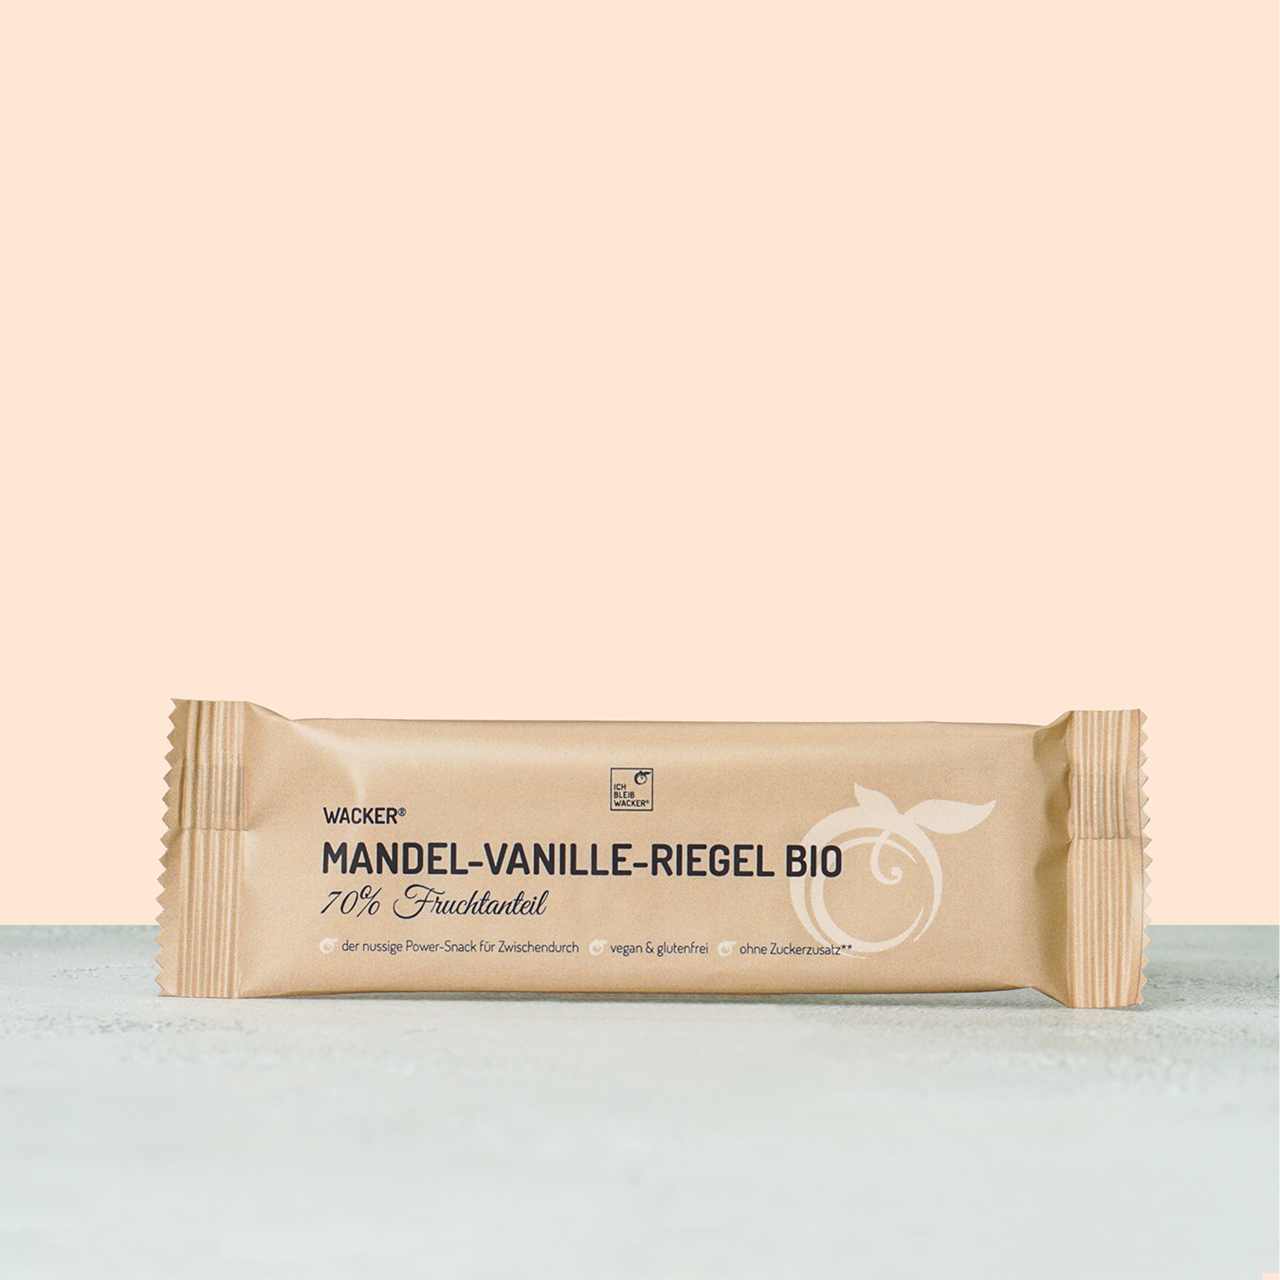 Wacker Mandel-Vanille-Riegel Bio, 40g